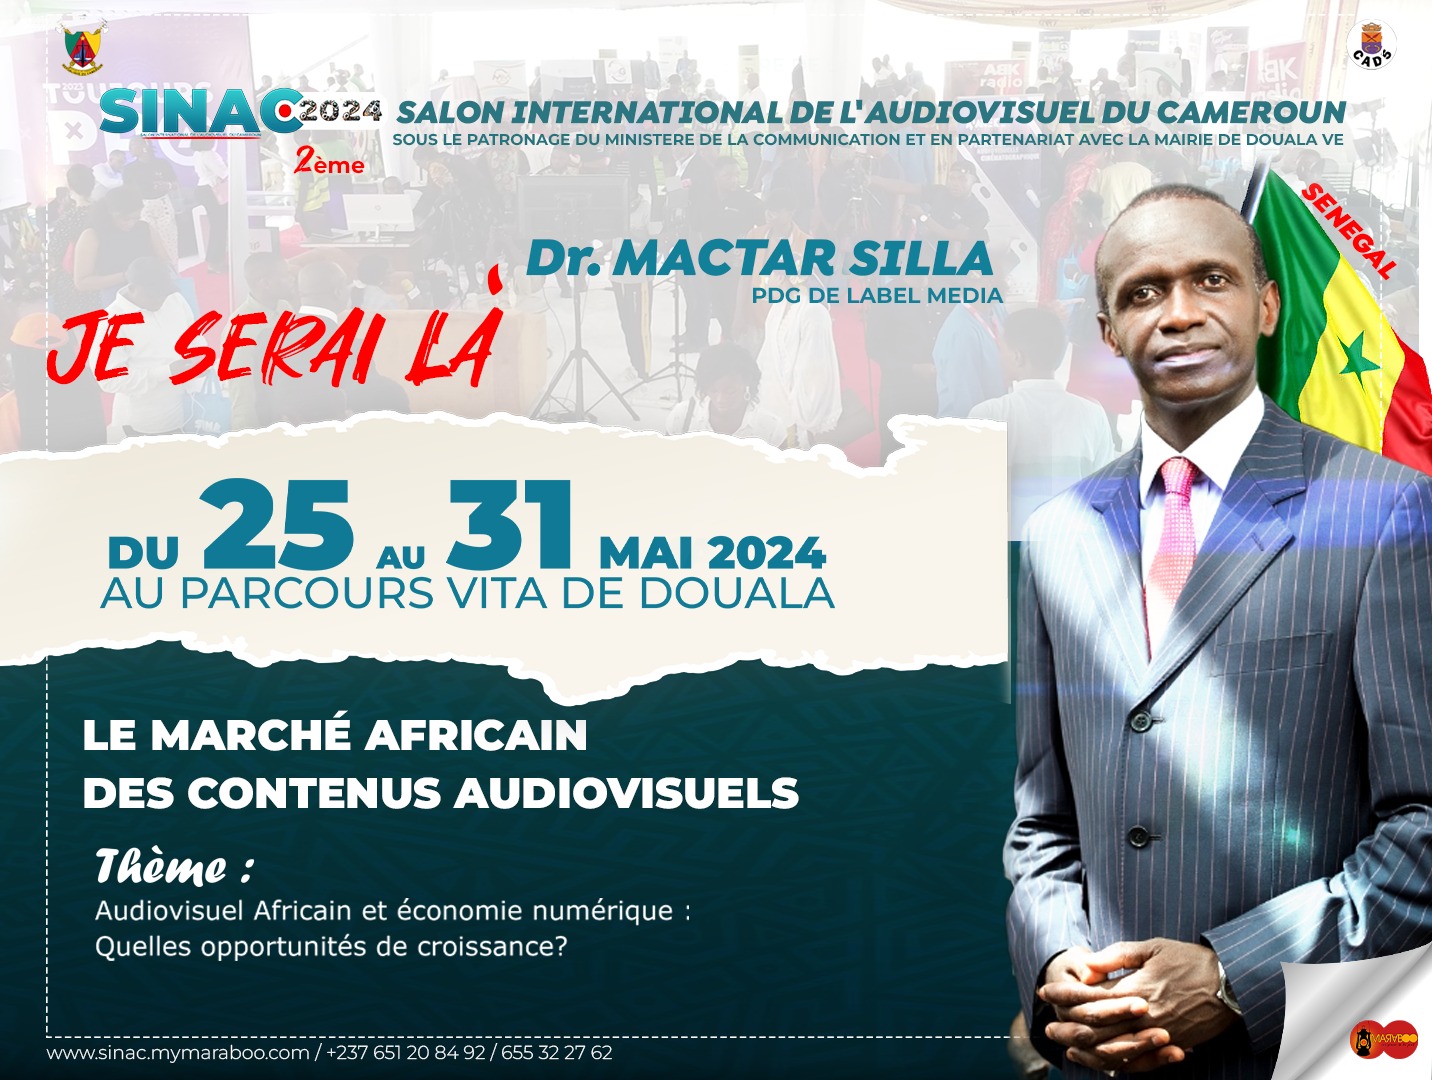 DR MACTAR SILLA : LE VISIONNAIRE QUI RÉINVENTE L’AFRIQUE